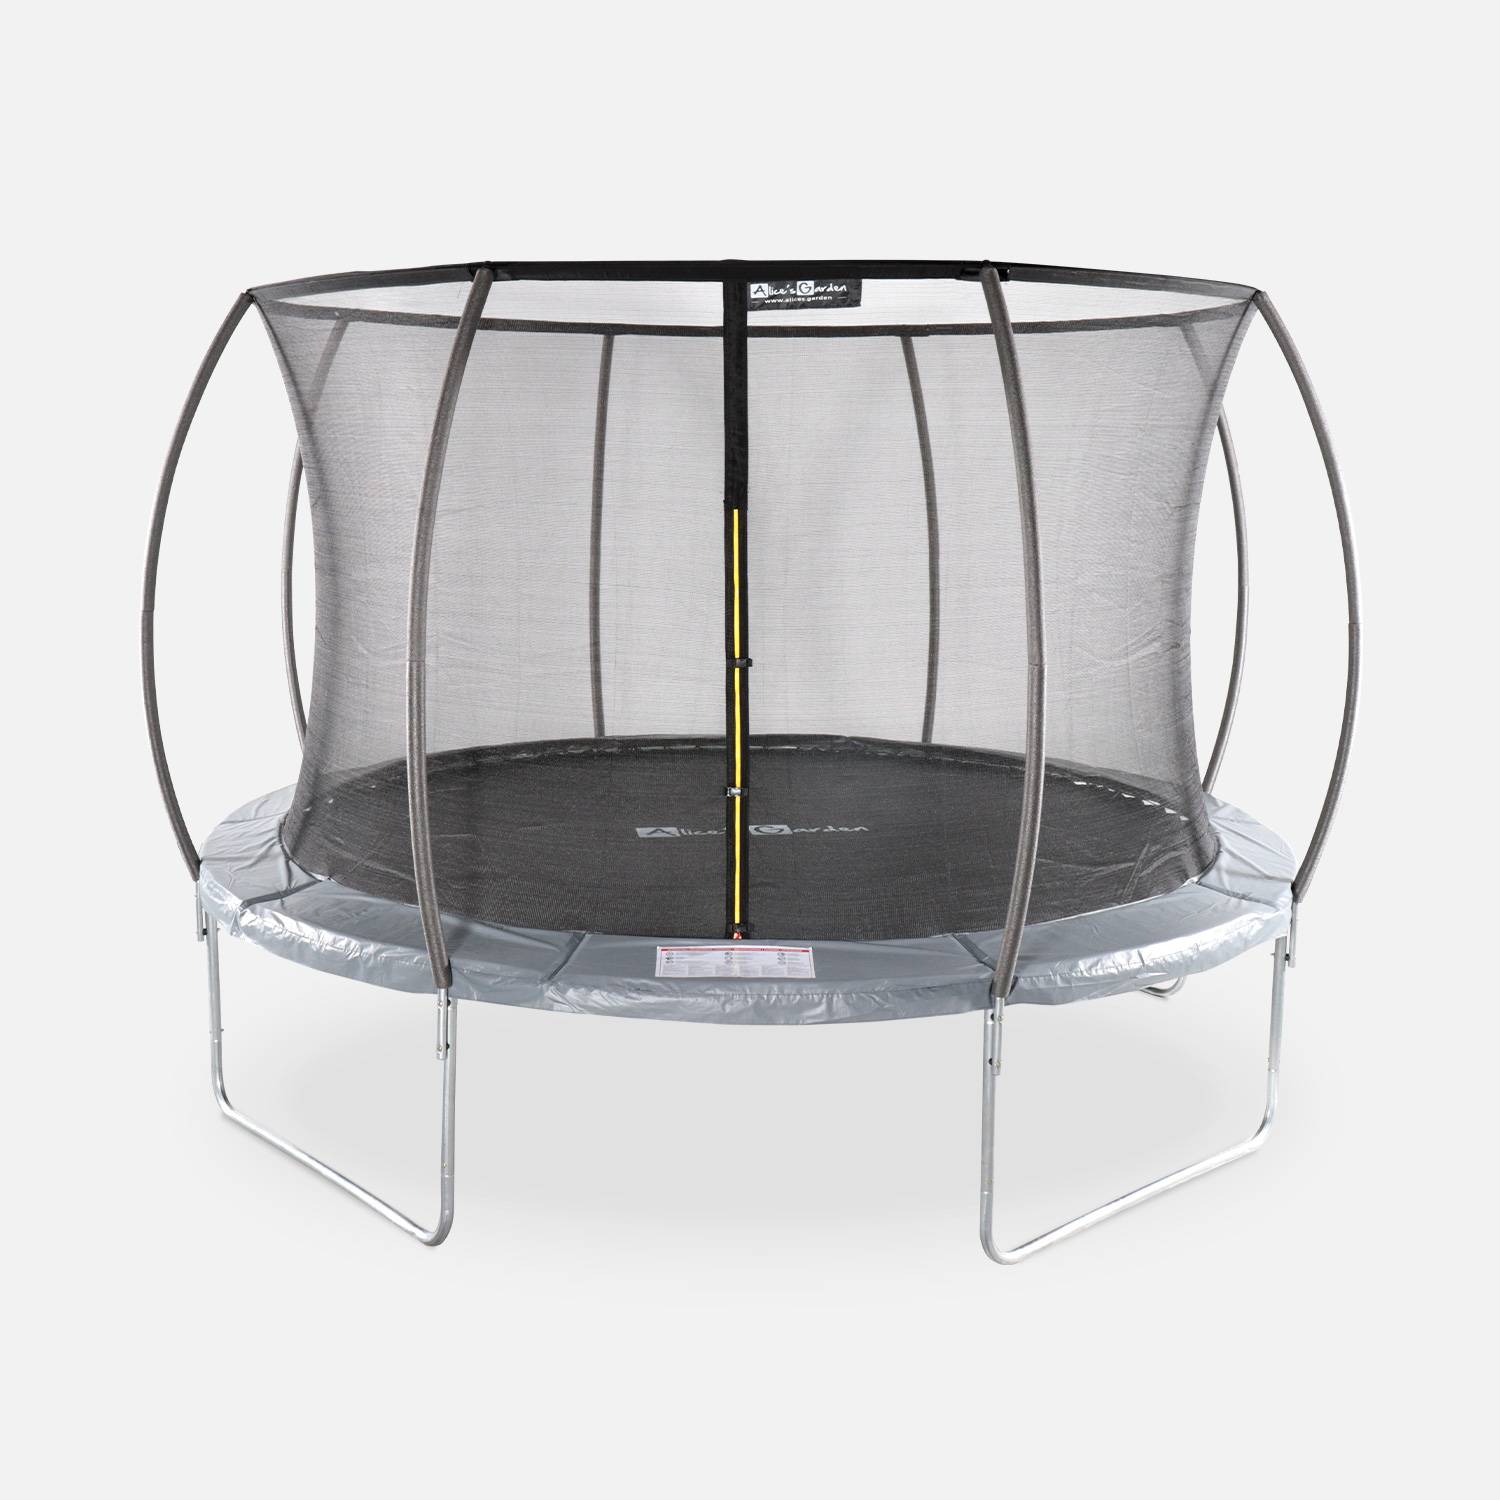 Trampolim redondo Ø 370cm cinzento com rede de proteção interior - Saturne Inner - Novo modelo - trampolim de jardim 3,7m 370 cm |Design| Qualidade PRO | Normas da UE. Photo1